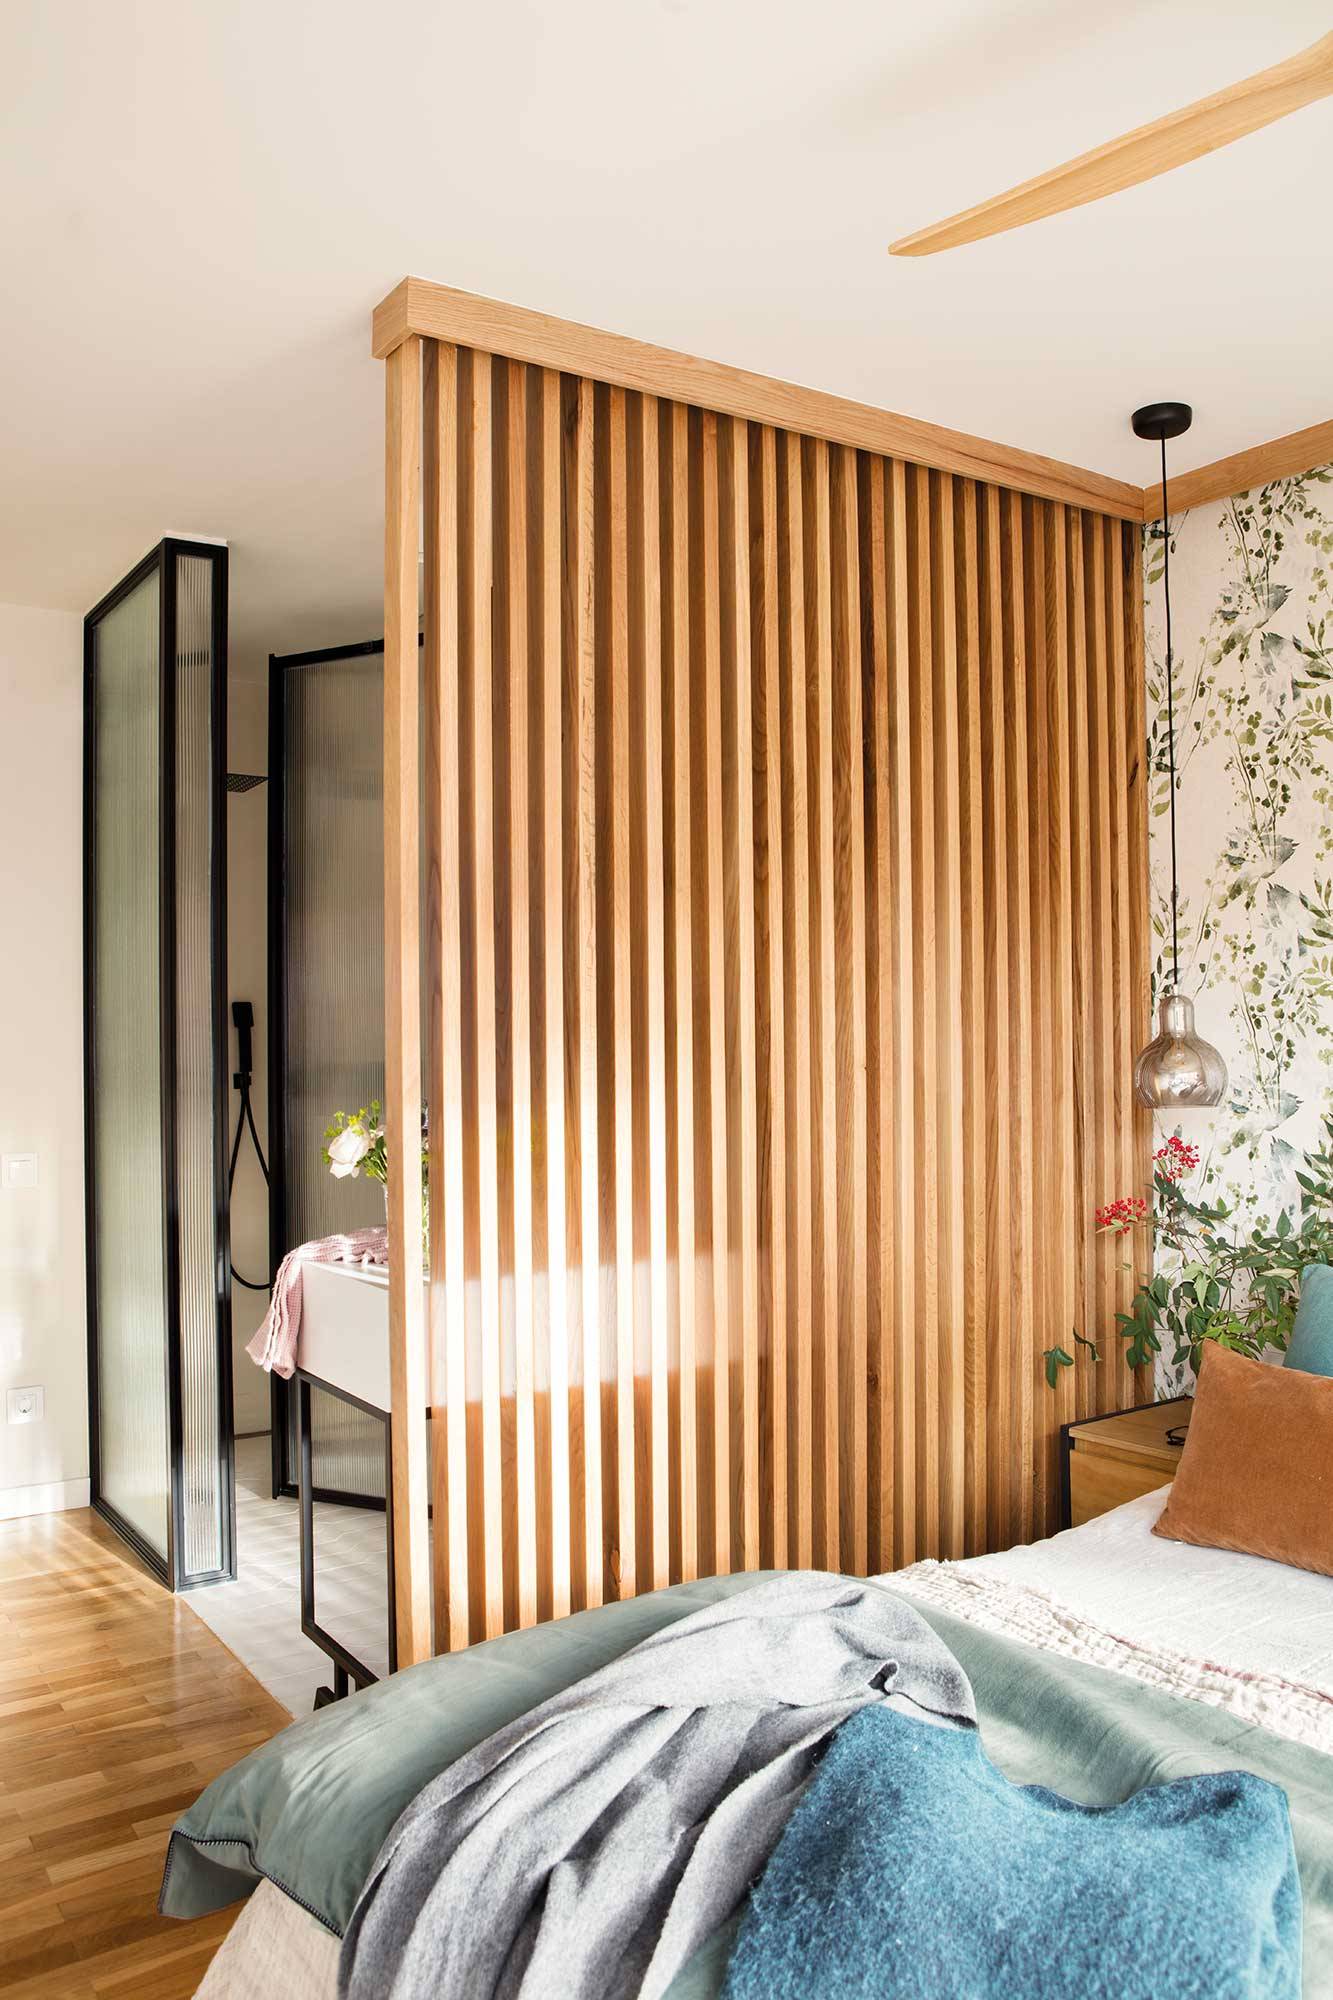 Dormitorio con celosía de madera que separa del baño 00537092